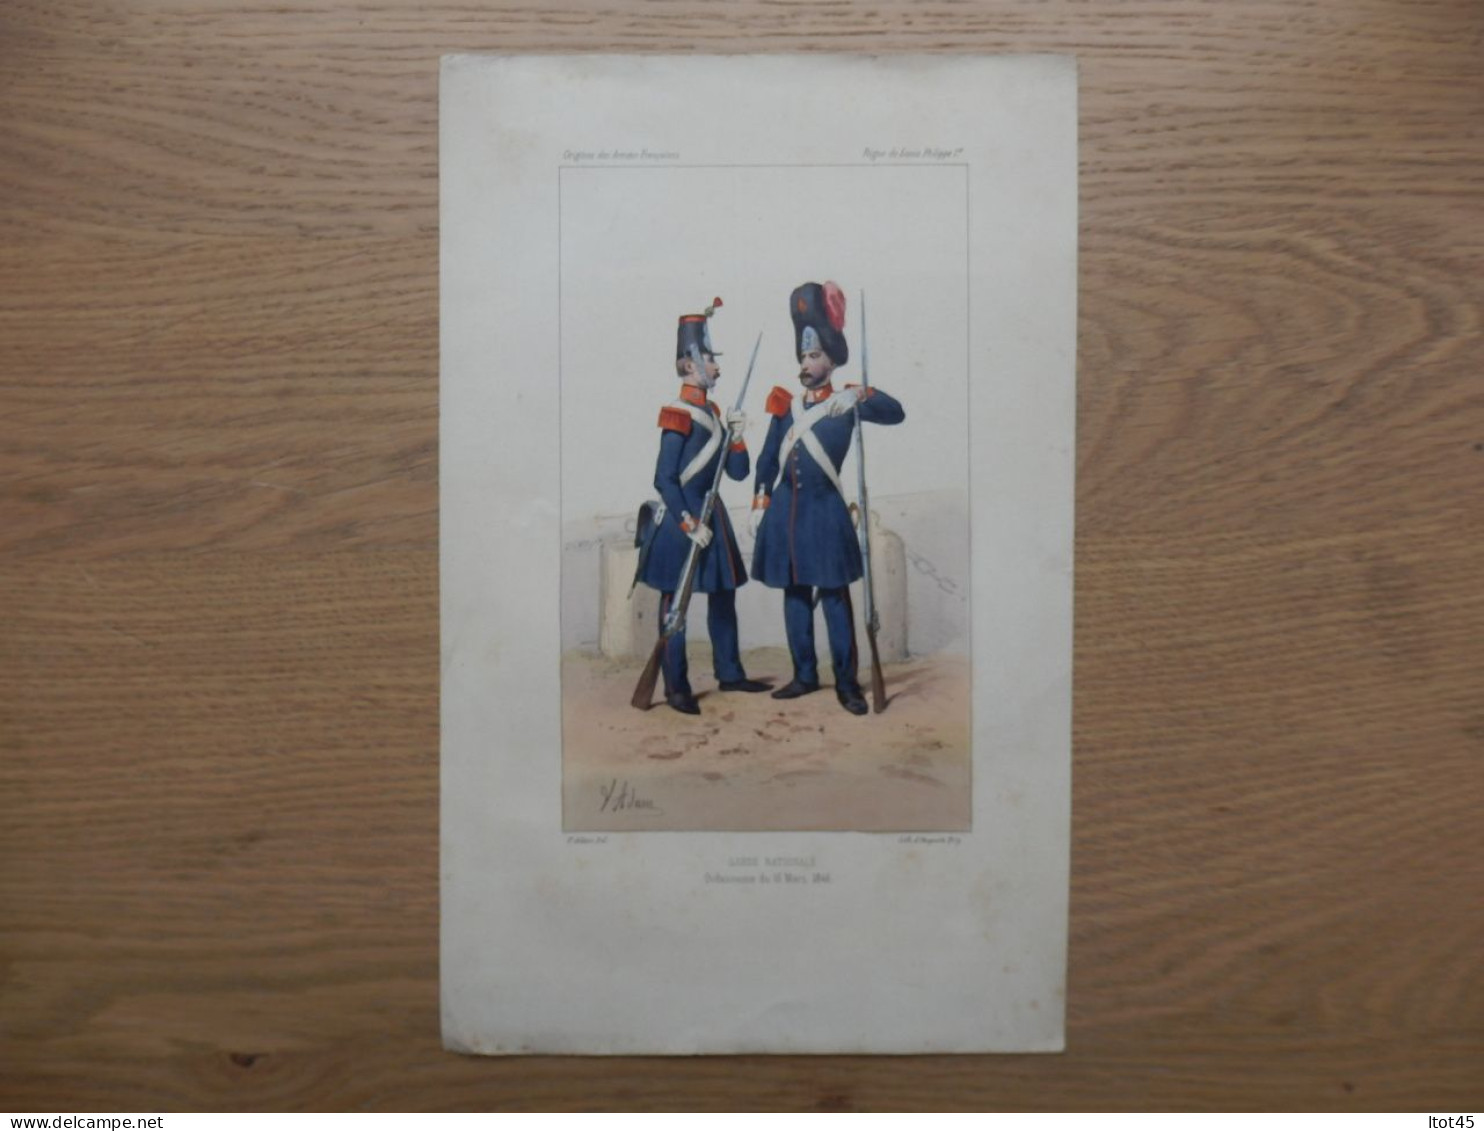 LITHOGRAPHIE REPRODUCTION GARDE NATIONALE ORDONNACE DU 16MARS 1846 - Uniform